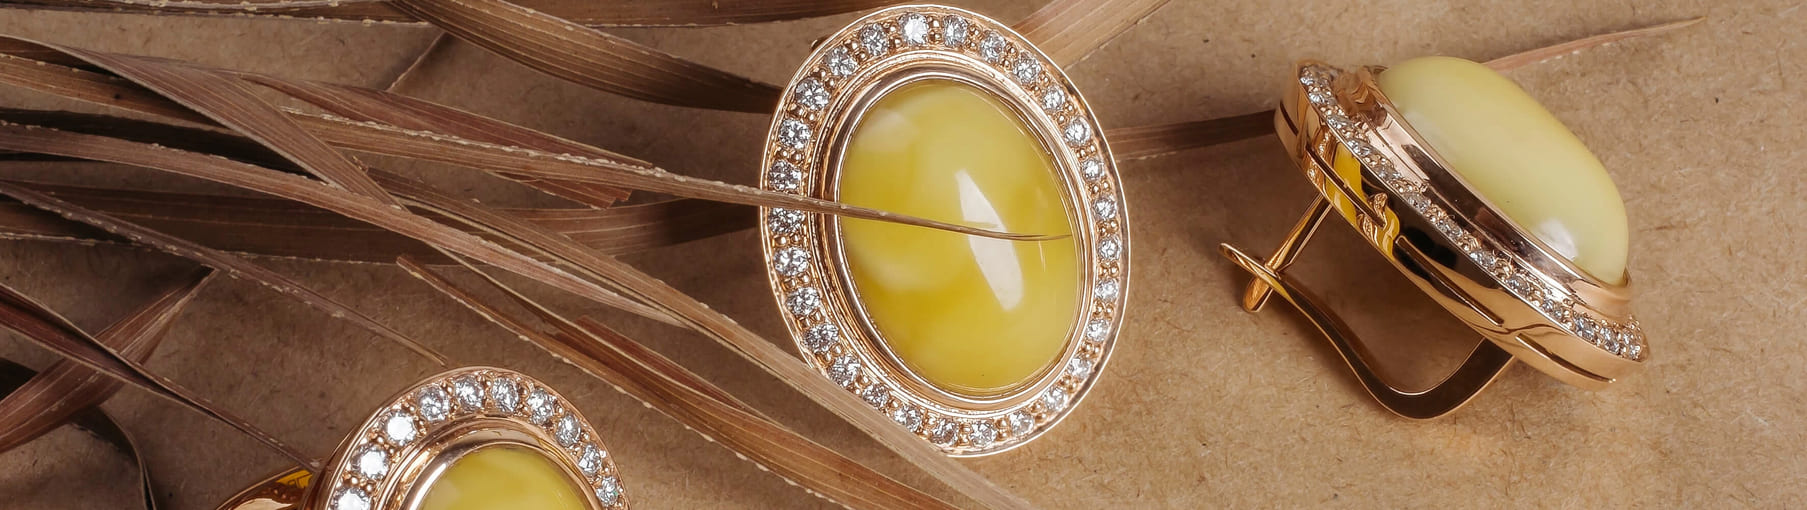 Топ желтых камней в ювелирных украшениях: самые популярные драгоценные иполудрагоценные минералы желтого цвета